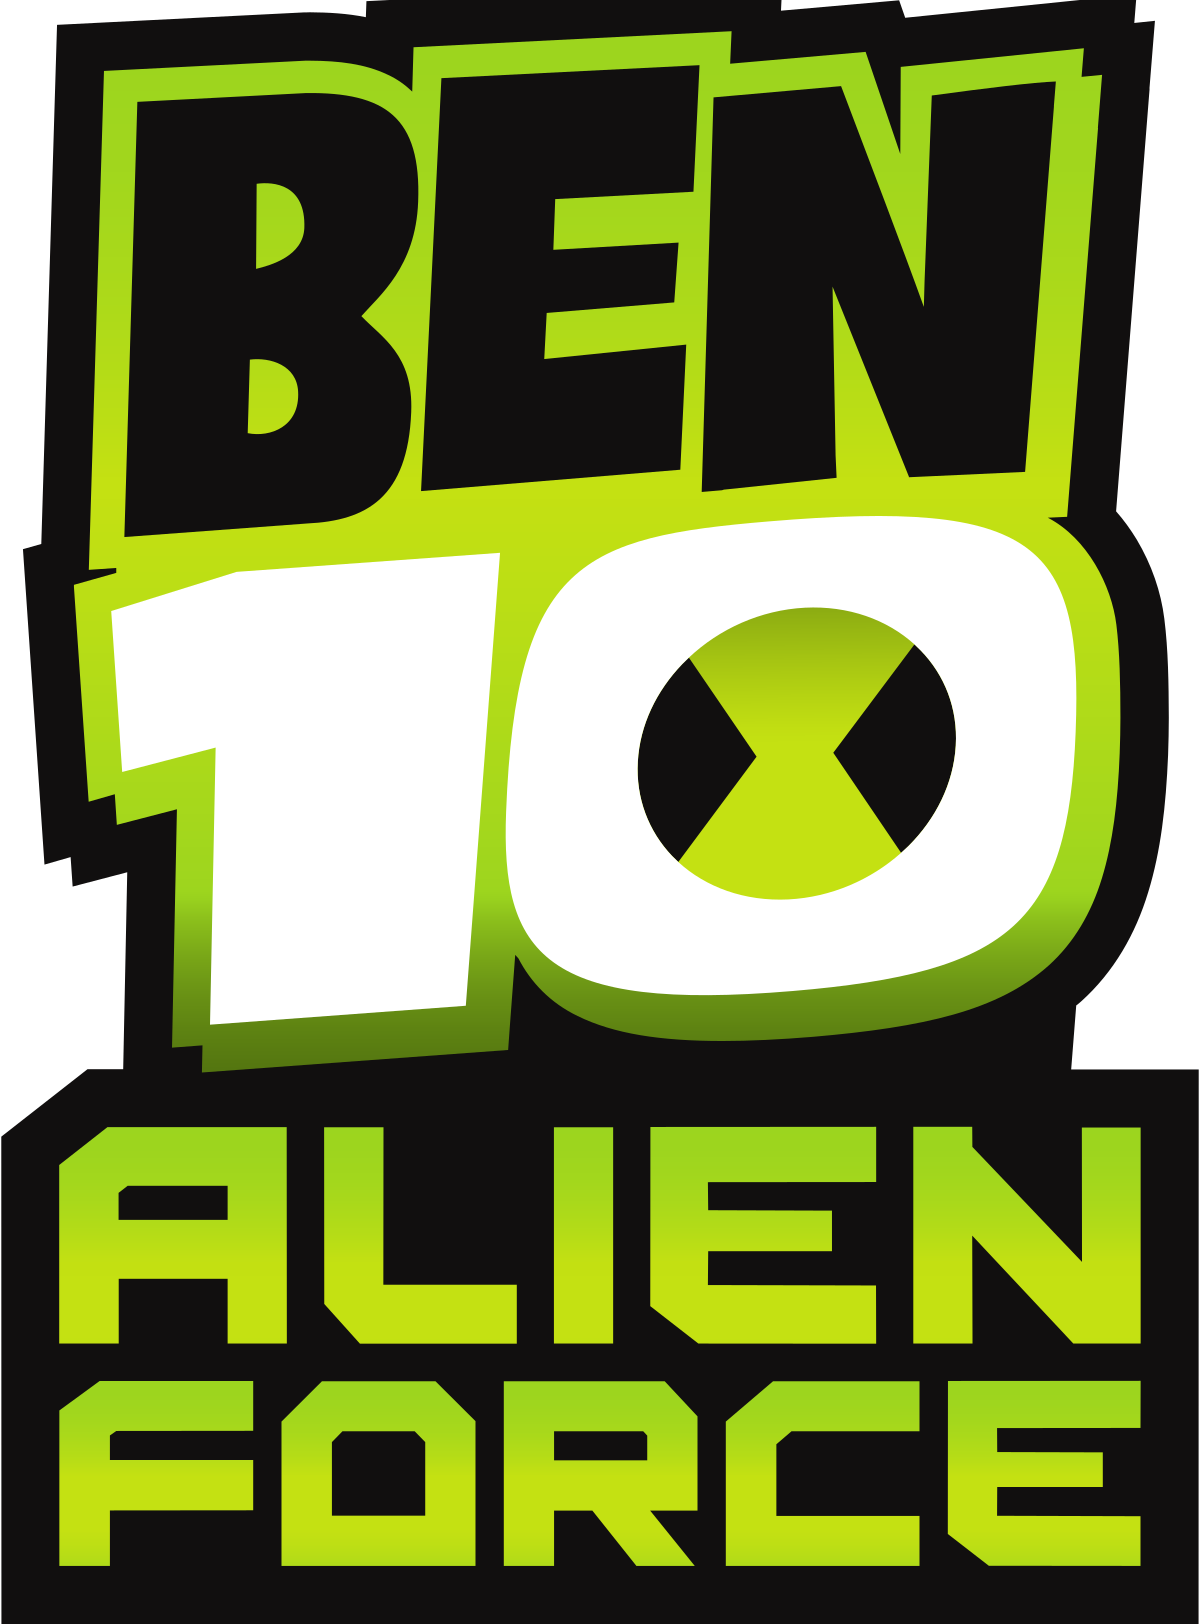 Ben 10: Alien Force Art